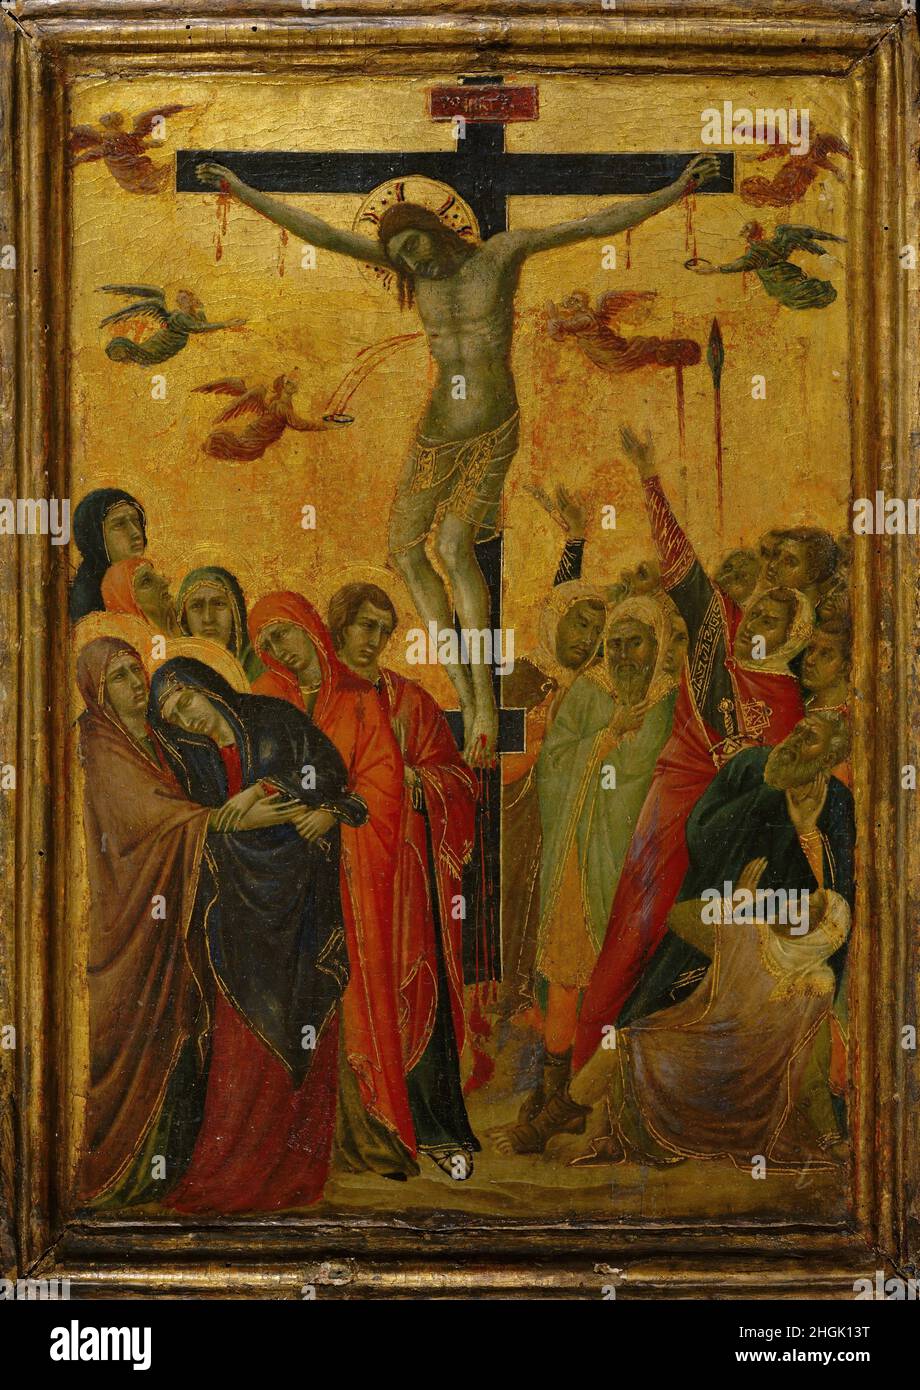 La Crocifissione - 1315c. - tempera su tavola 38, x 27 cm - di Buonaventura sega Foto Stock